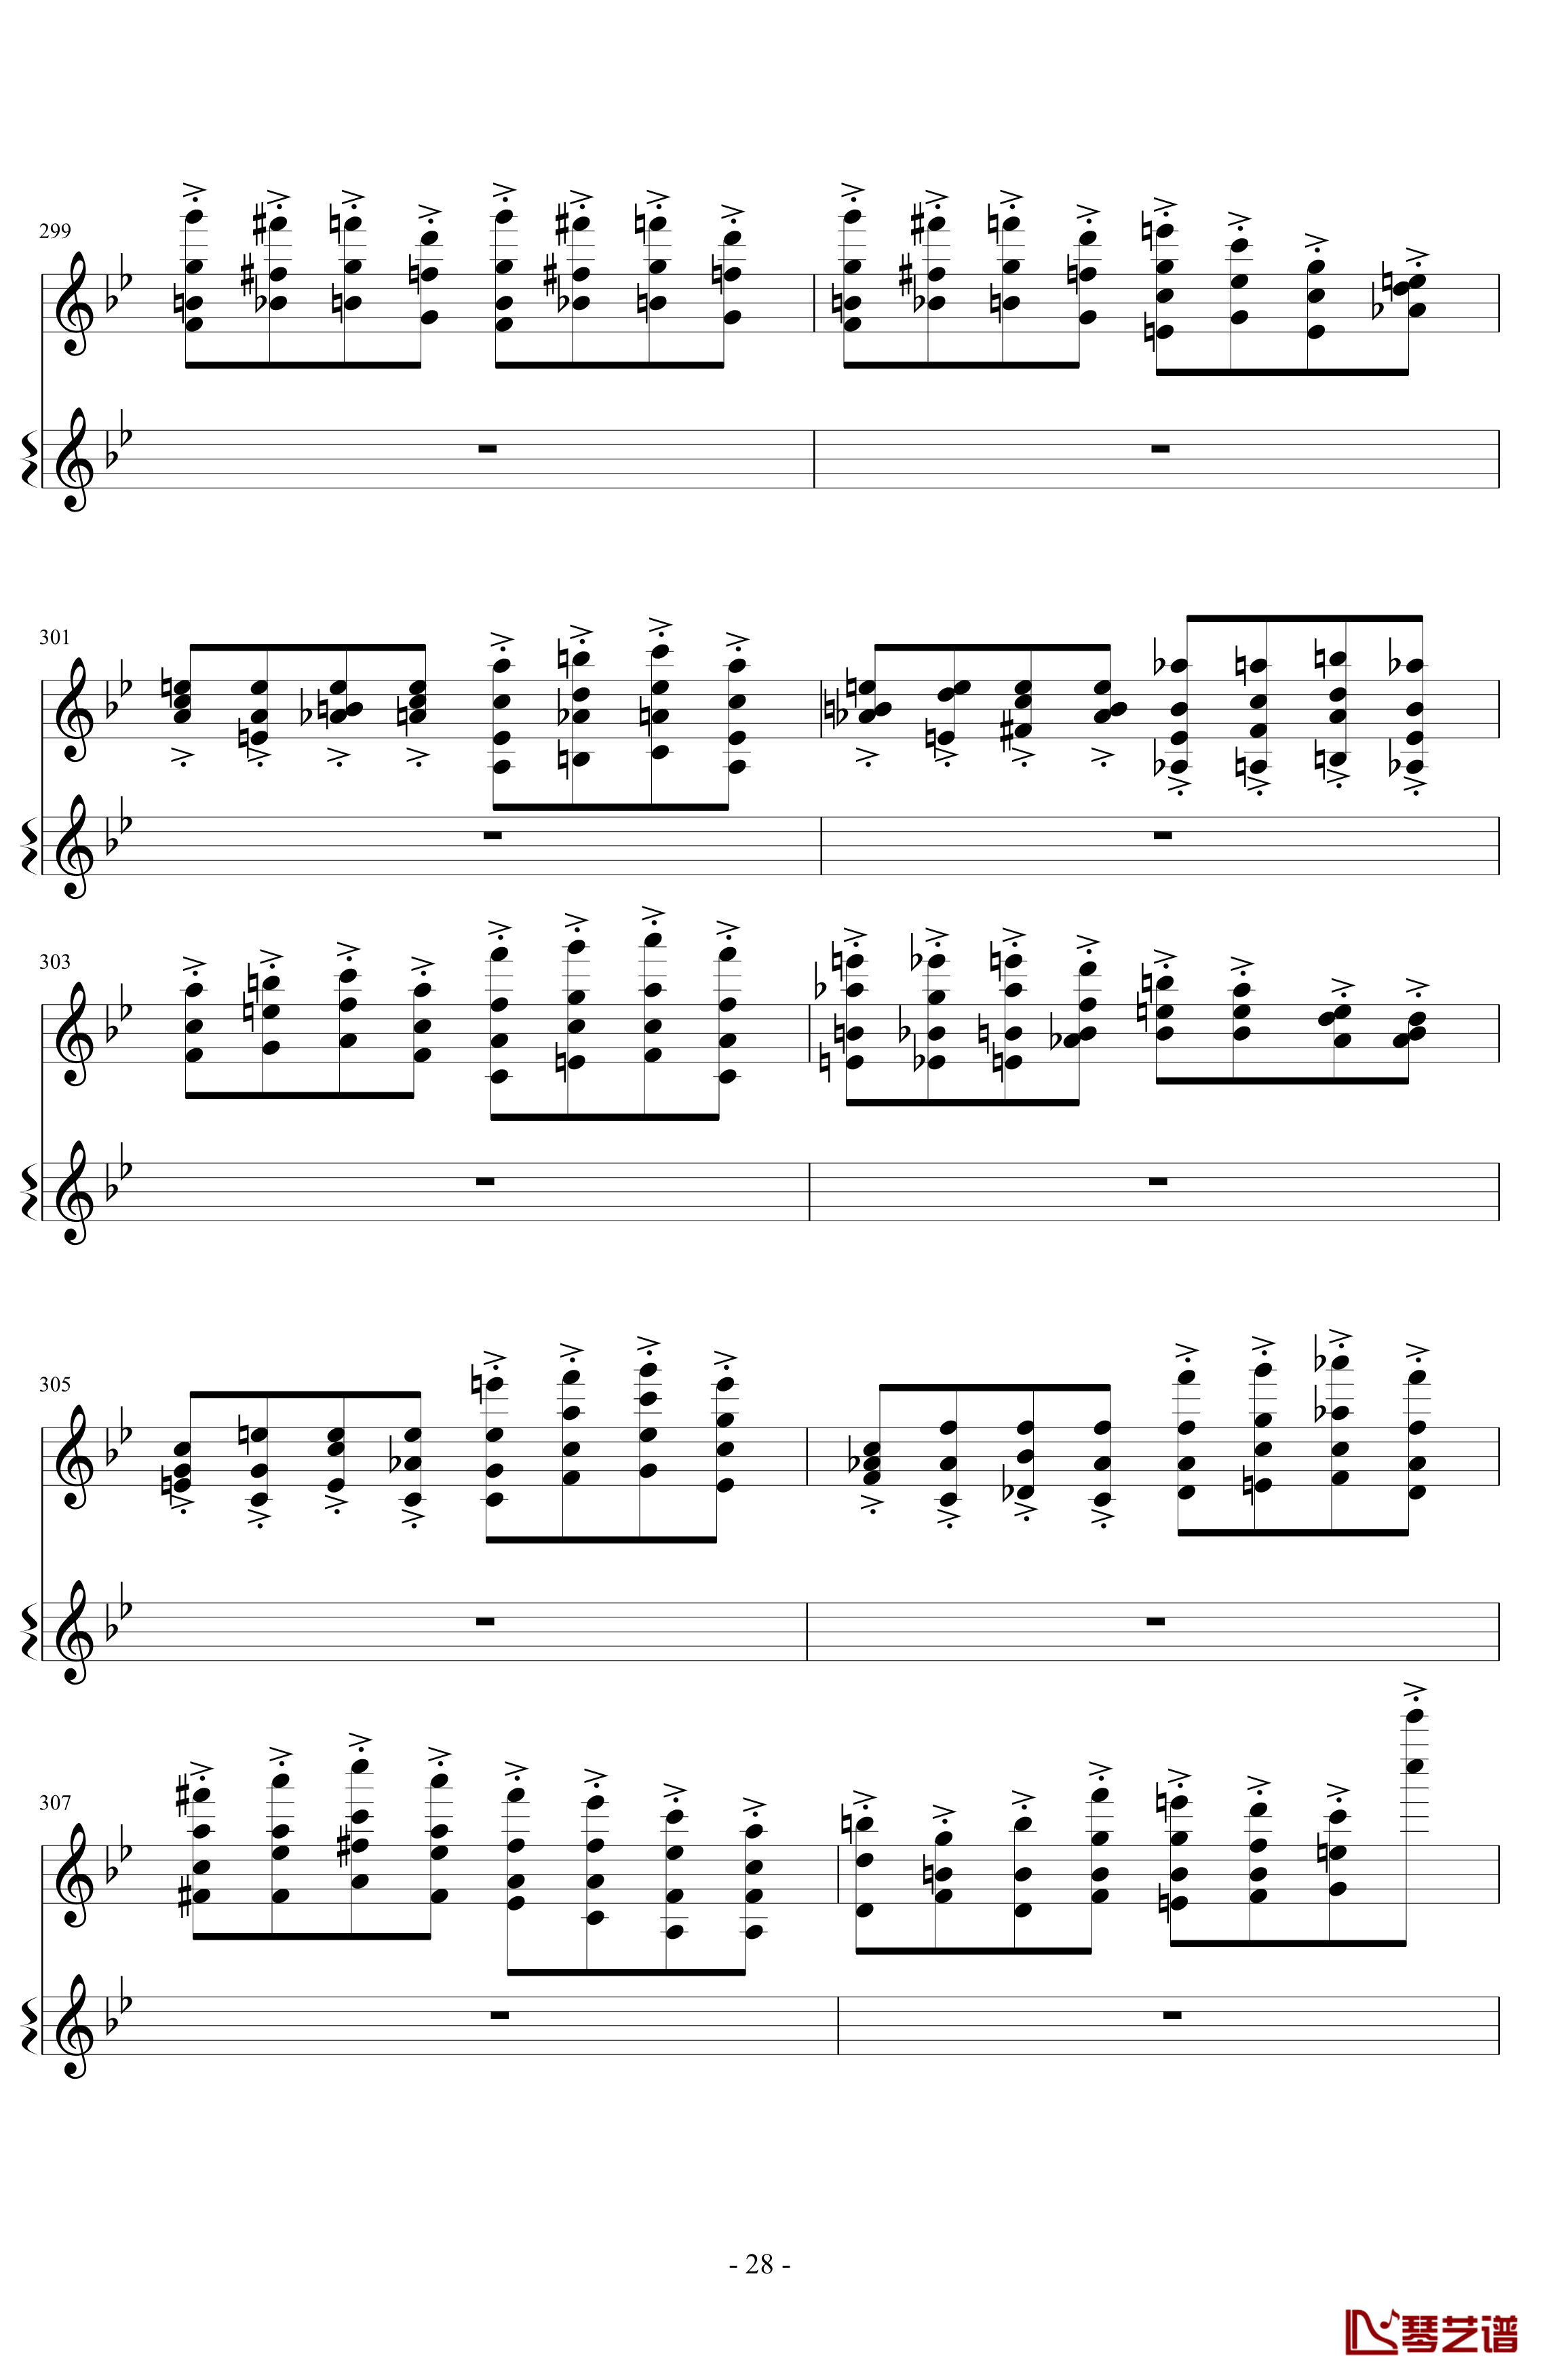 意大利国歌变奏曲钢琴谱-DXF28